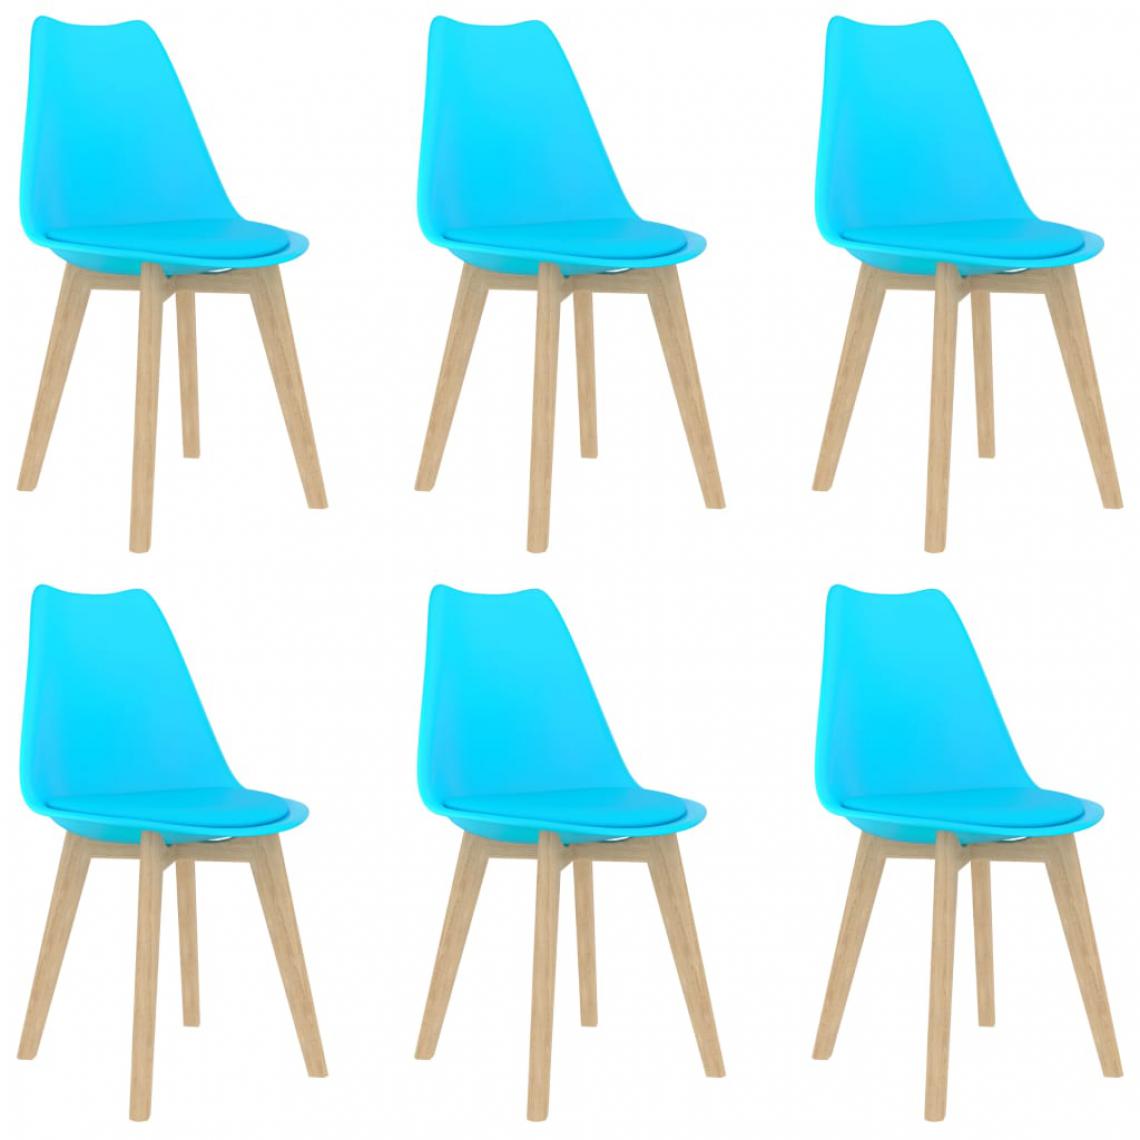 Chunhelife - Chunhelife Chaises de salle à manger 6 pcs Bleu Plastique - Chaises